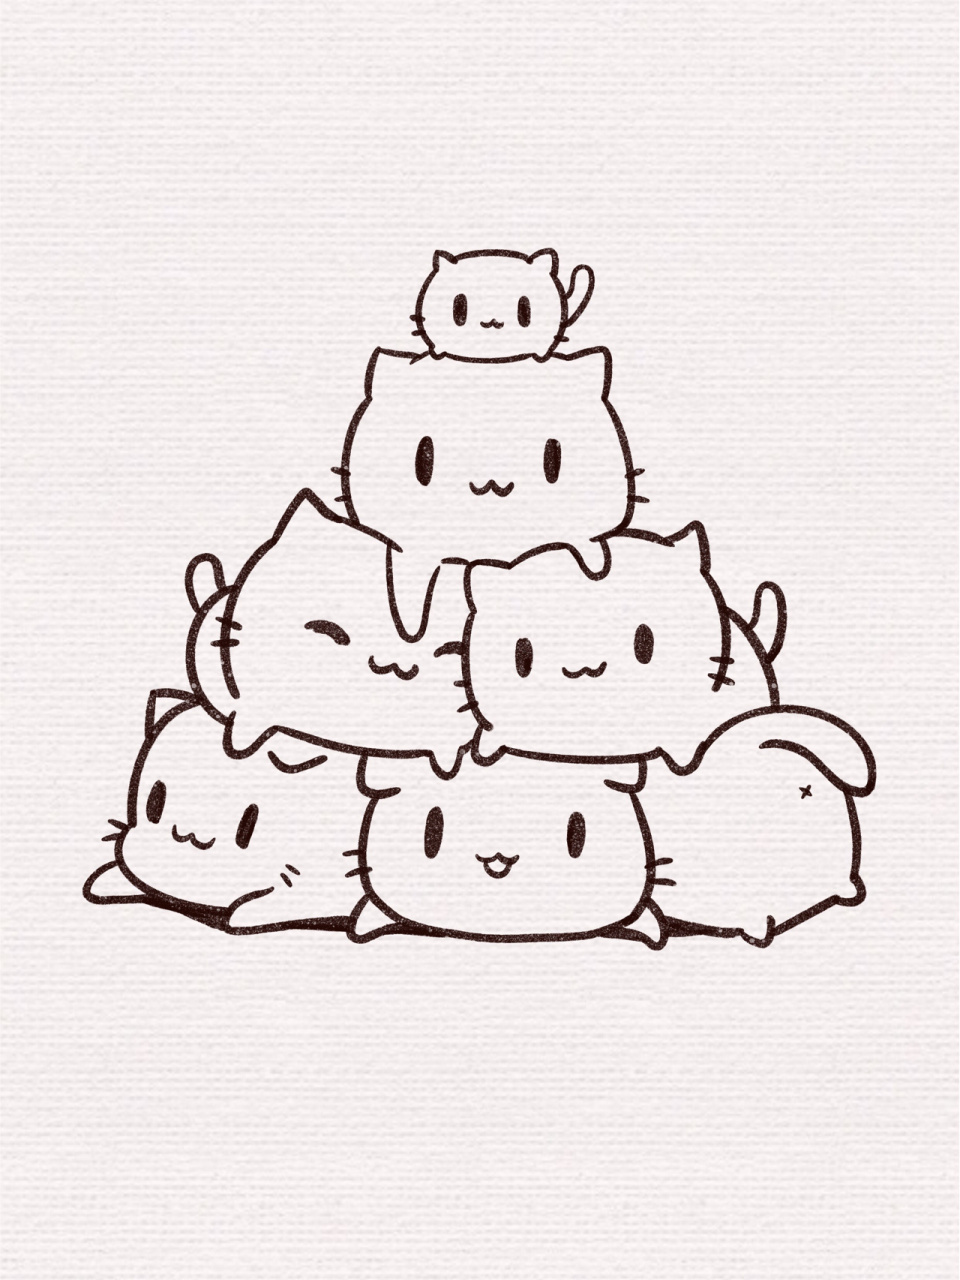 「简笔画」(100/16)小猫93叠叠高·内含过程 一堆可爱的小猫猫叠加